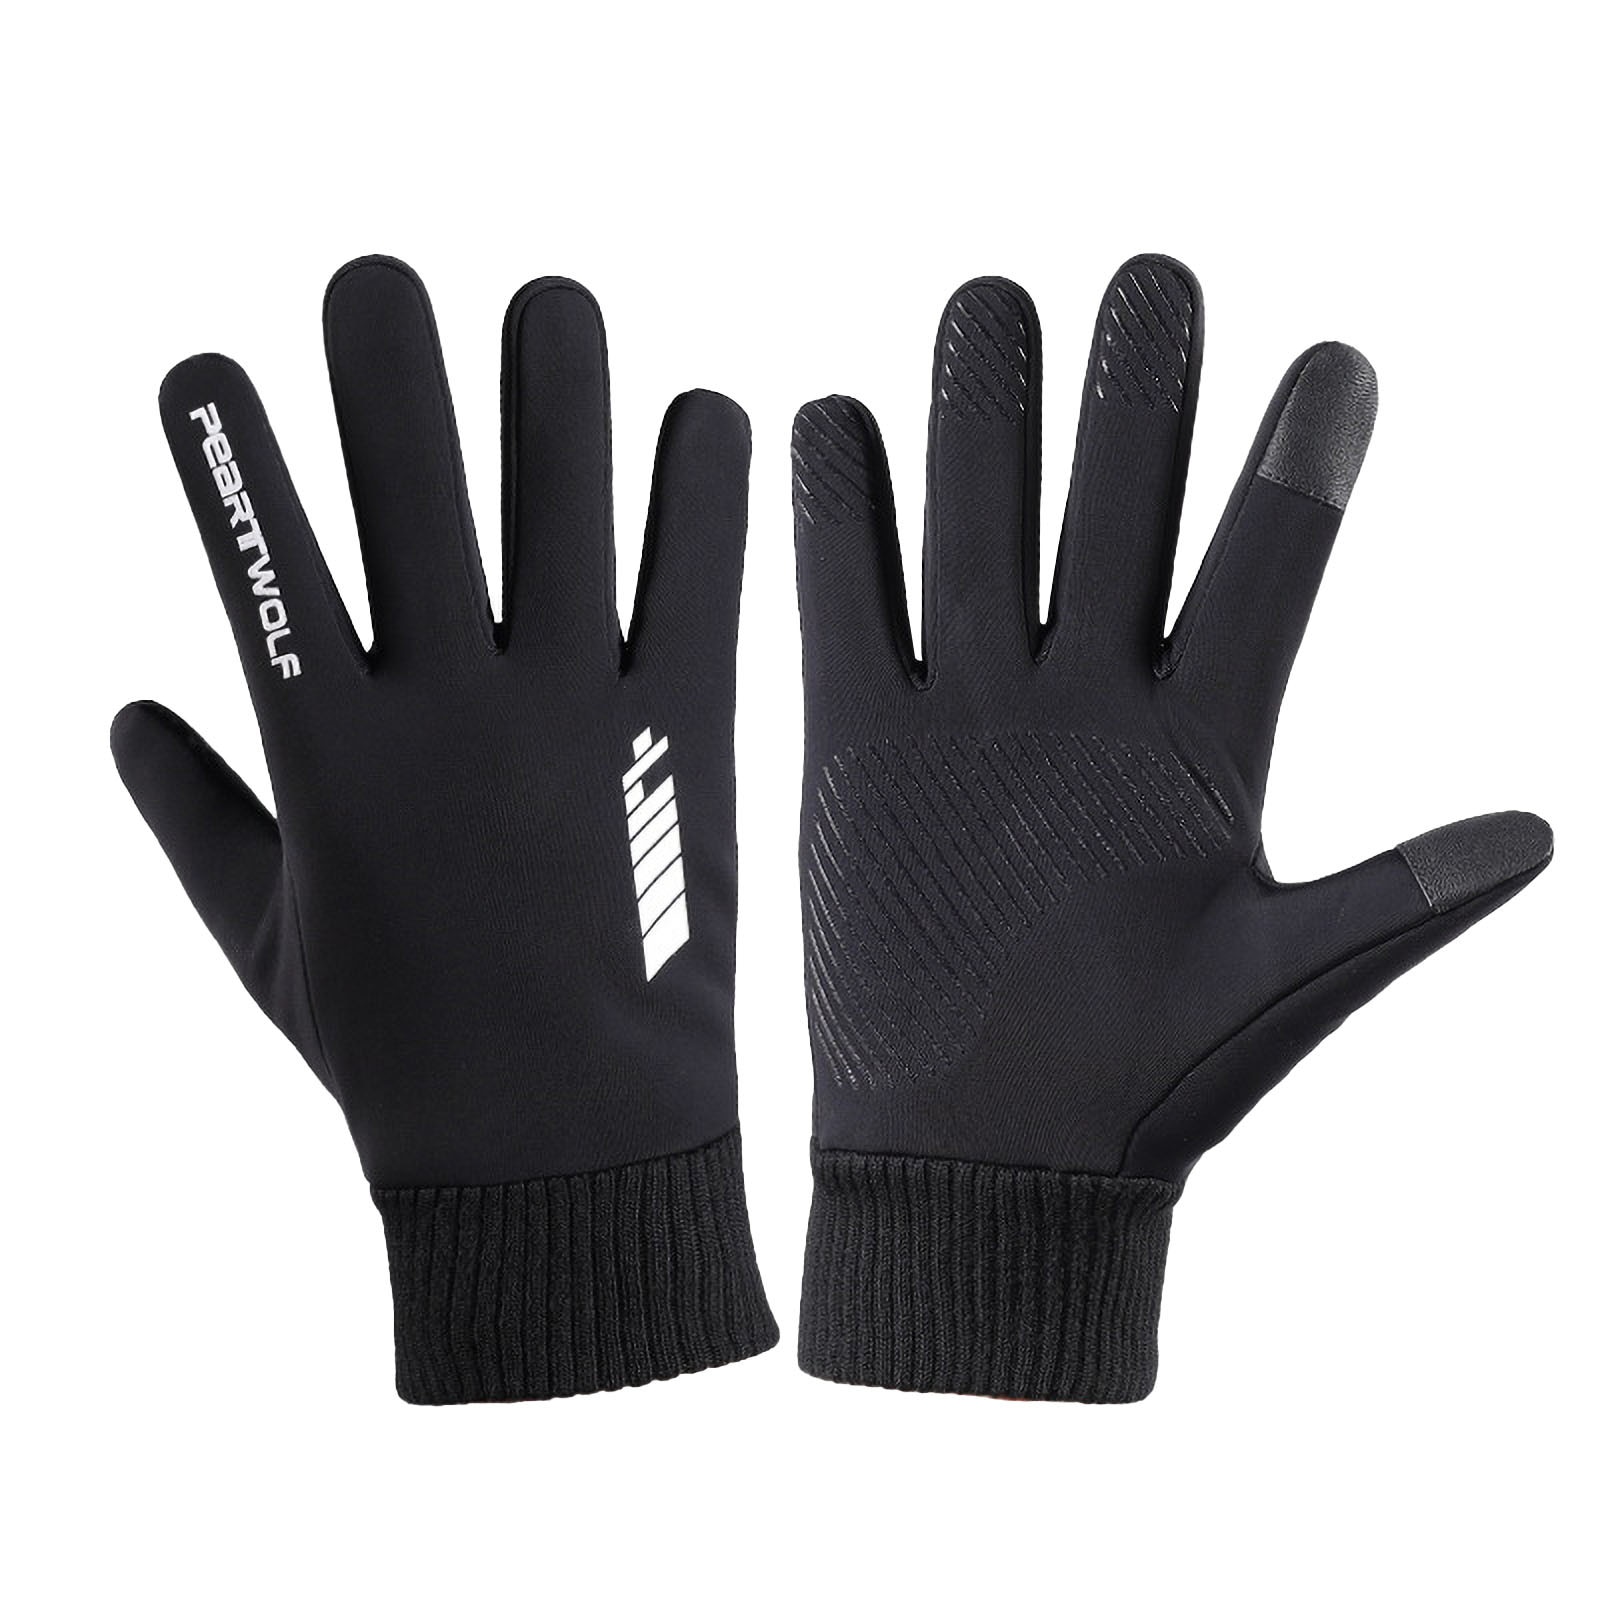 Mode Winter Handschoenen Warme Touchscreen Verwarming Handschoenen Antislip Winddicht Handschoenen Dikker Voor Mannen Gant Outdoor # j2p